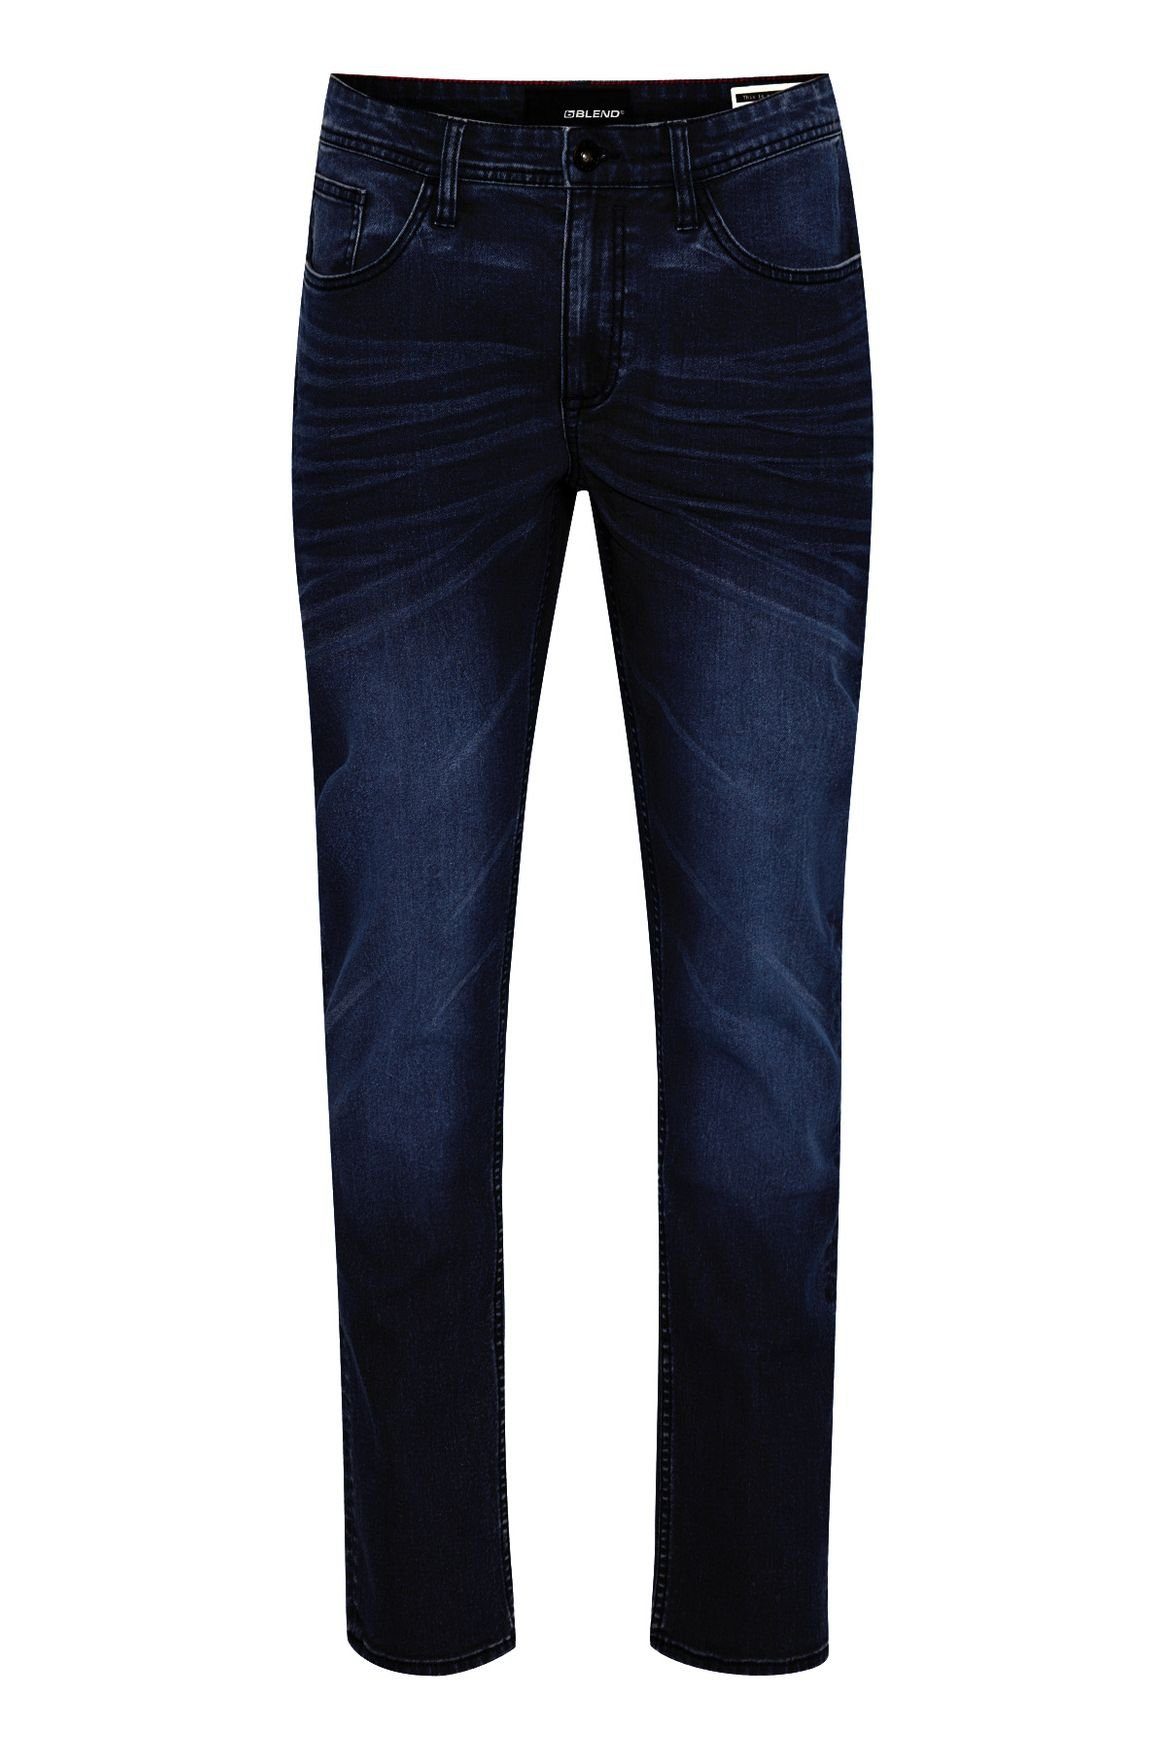 in Stoned TWISTER Slim Hose Washed Blend Jeans Fit Dunkelblau 4515 Slim-fit-Jeans Basic FIT Denim